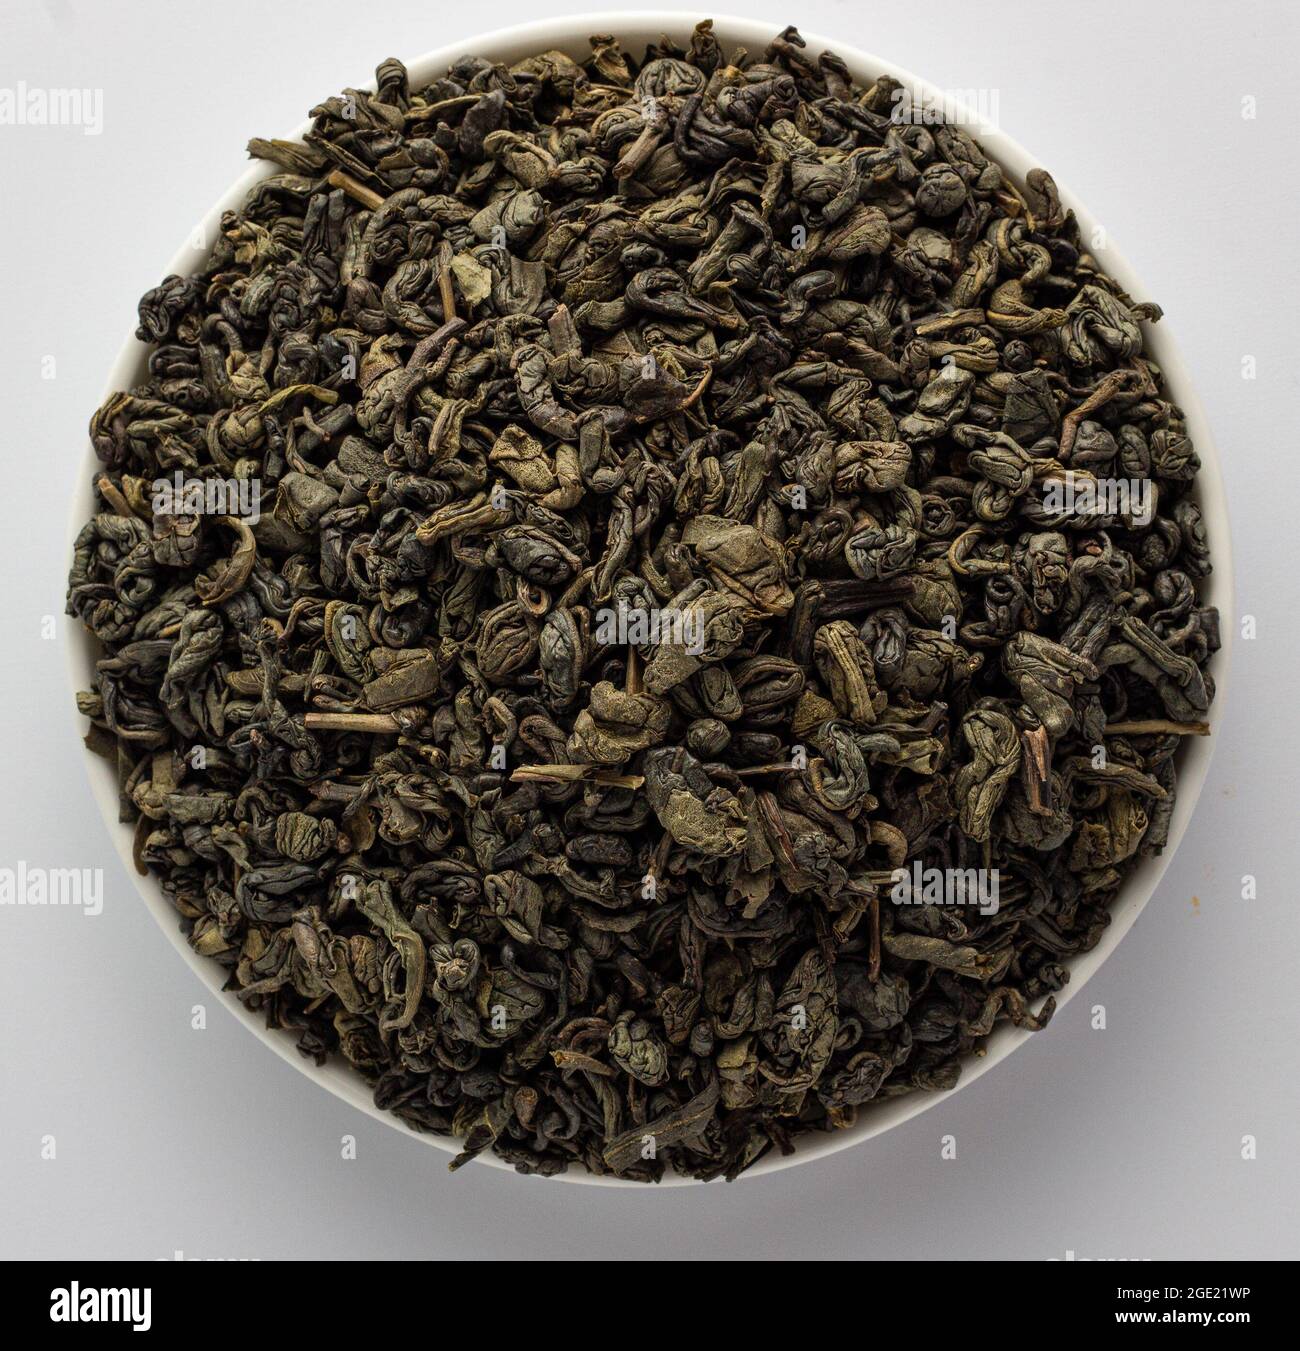 Foglie di tè verde Gunpowder cinese essiccato in una ciotola, su sfondo bianco Foto Stock